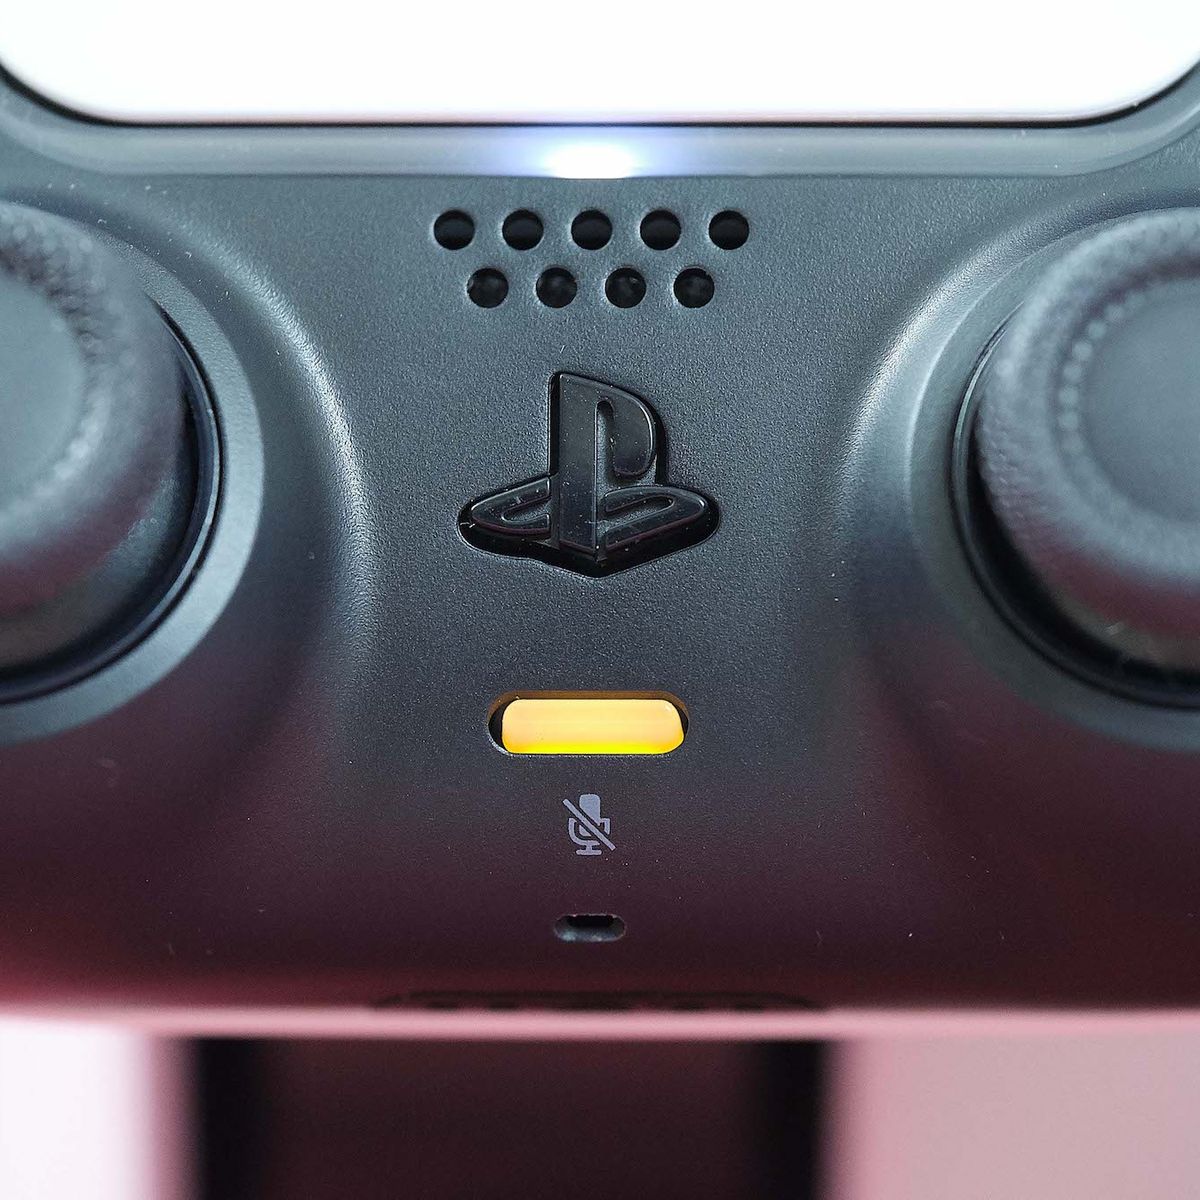 Conectar el mando de PS4: la guía rápida